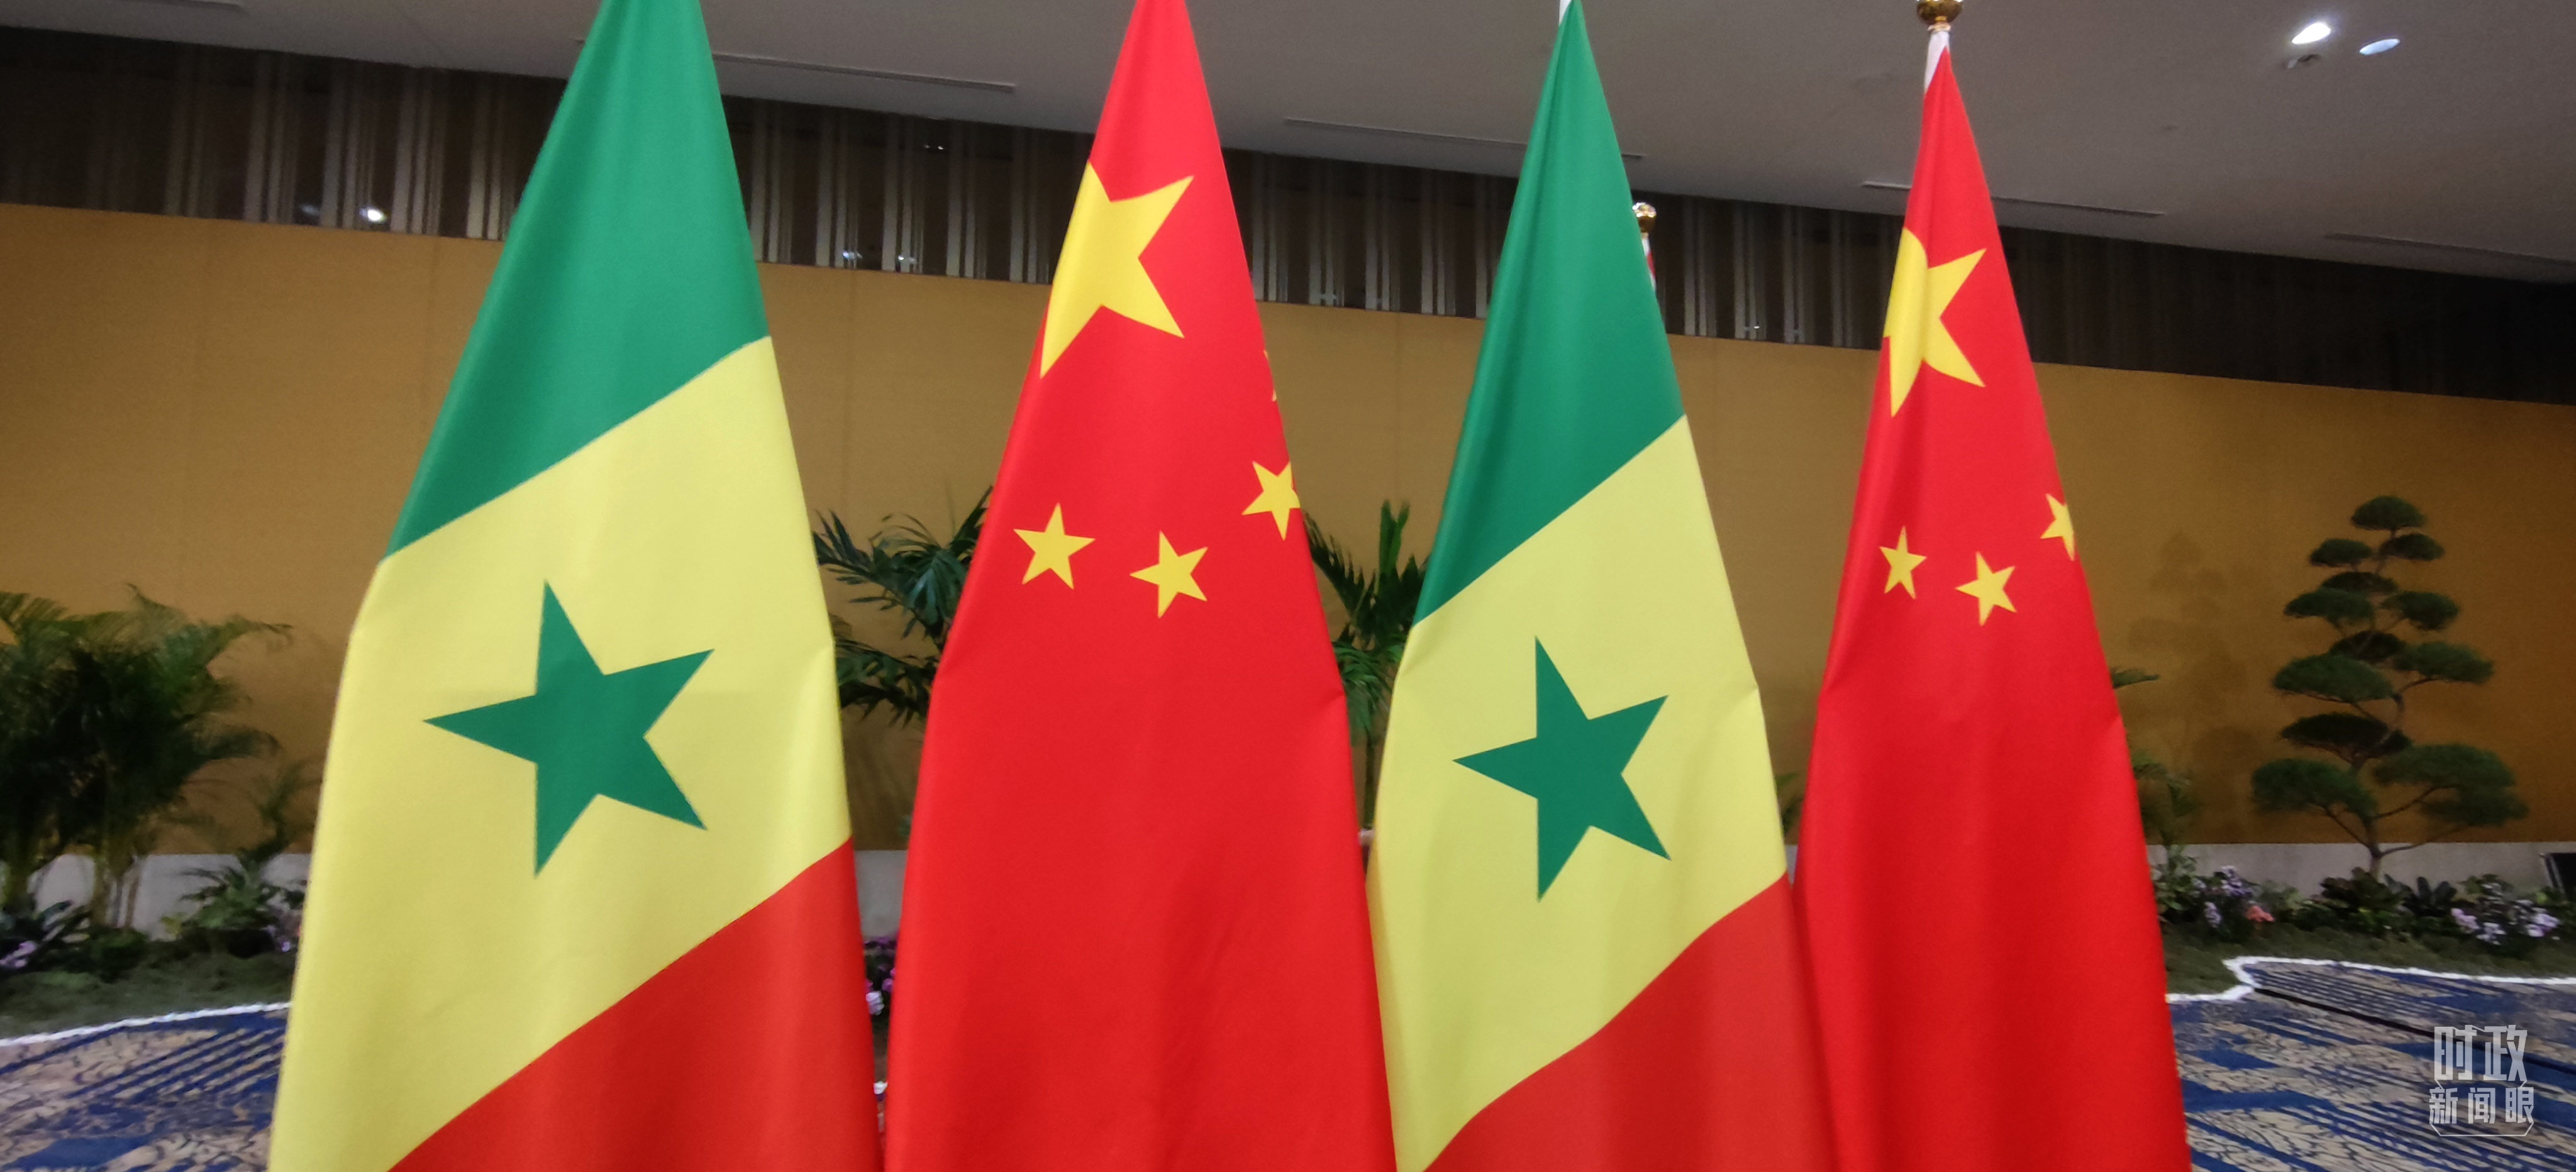 △会见现场的中国和塞内加尔两国国旗。（总台央视记者耿小龙拍摄）